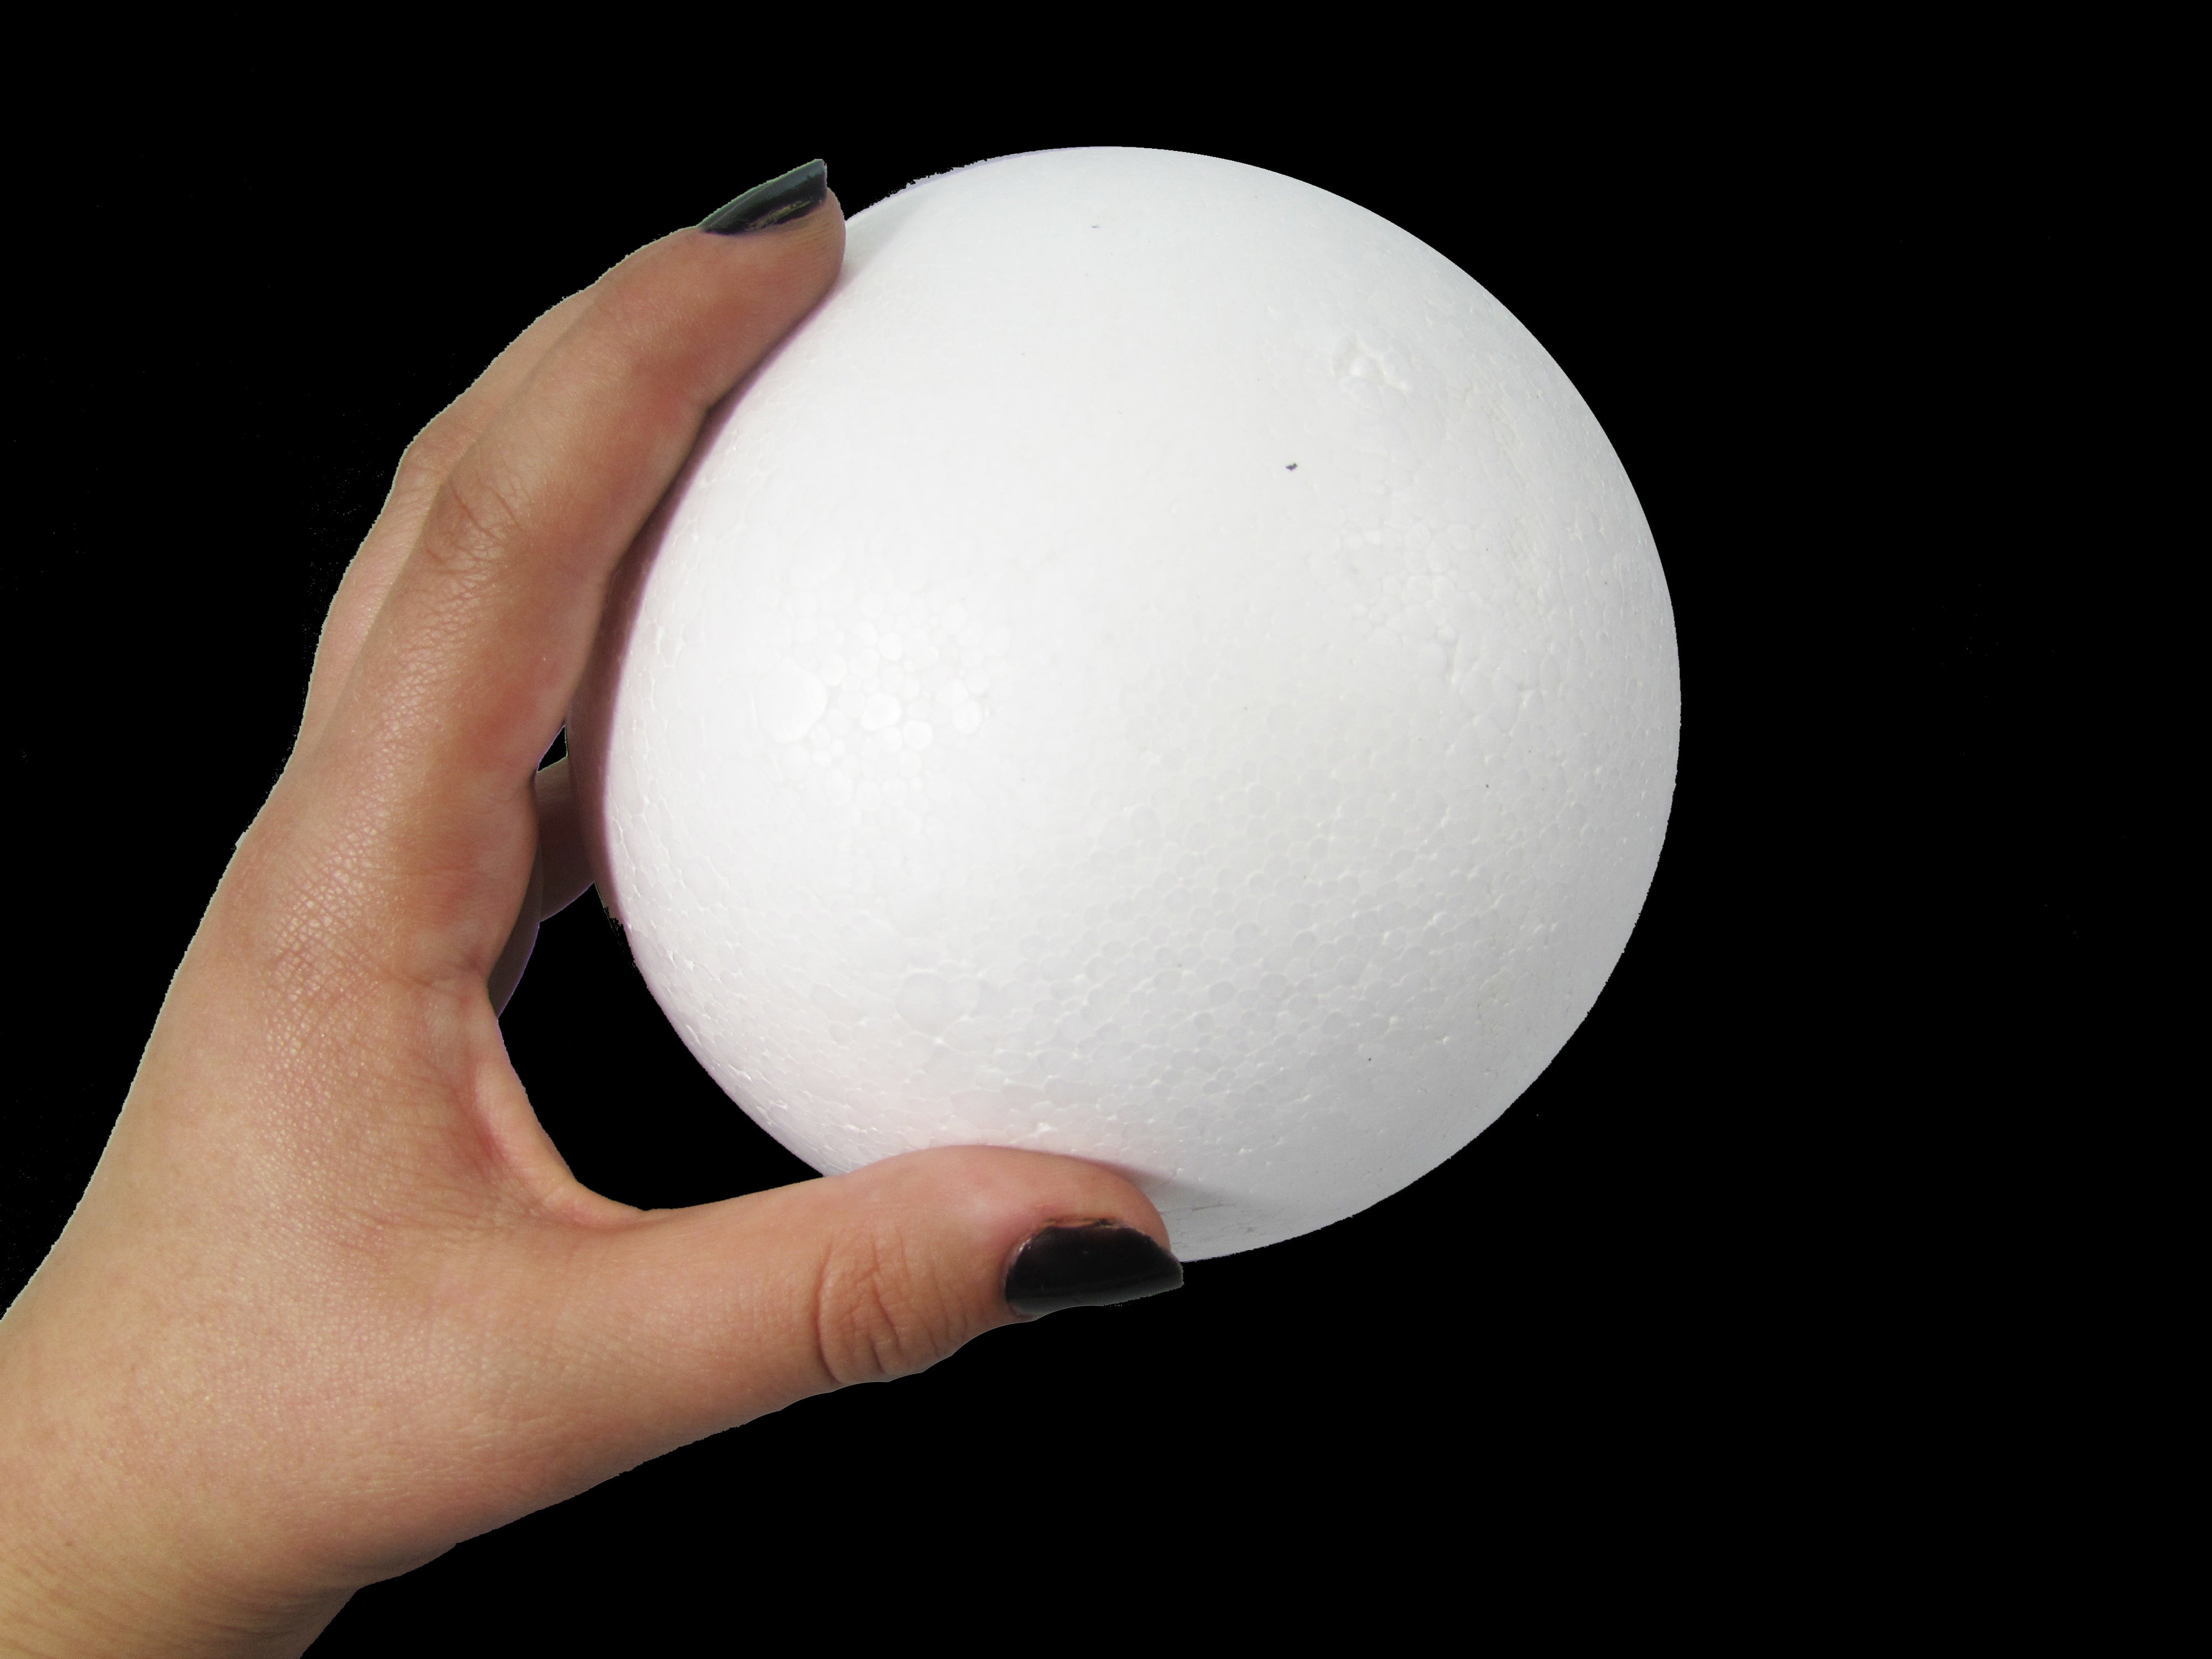 Styrofoam Balls 5 Inch - Set of 12